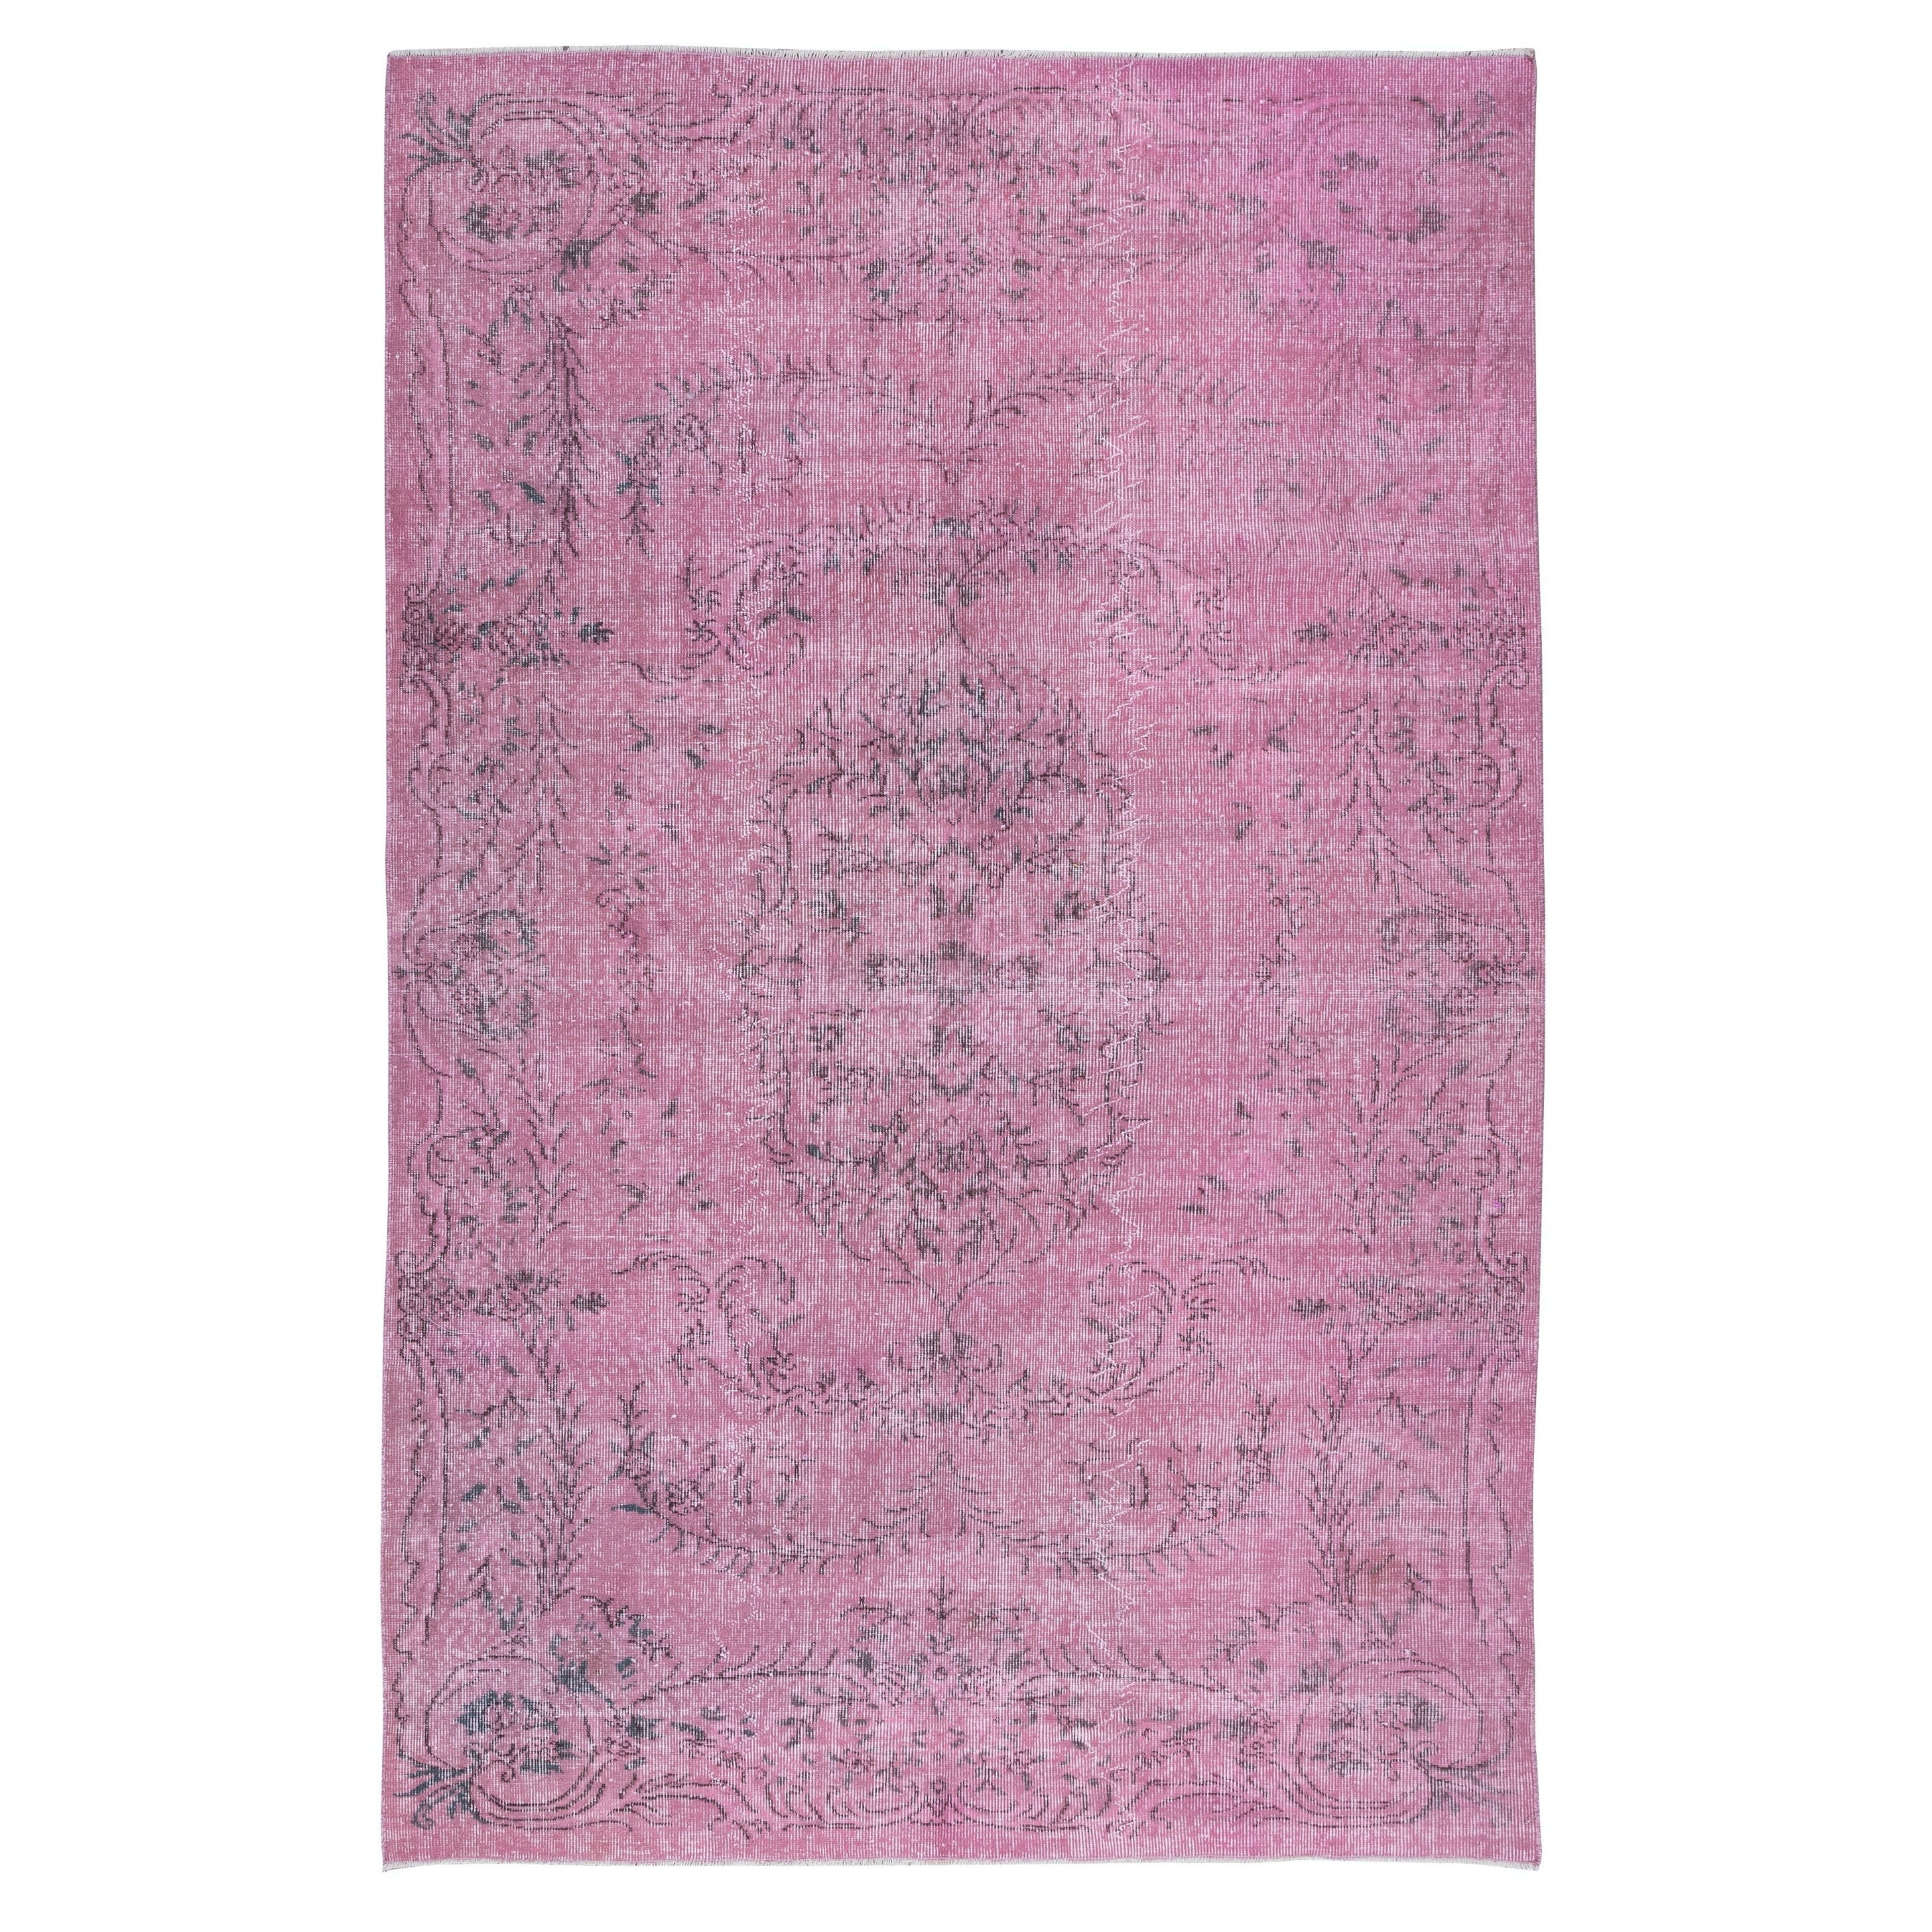 5.8x9.2 Ft Light Pink Wool Area Rug for Modern Interiors, Handmade in Turkey (Tapis de laine rose clair pour intérieurs modernes, fait à la main en Turquie)